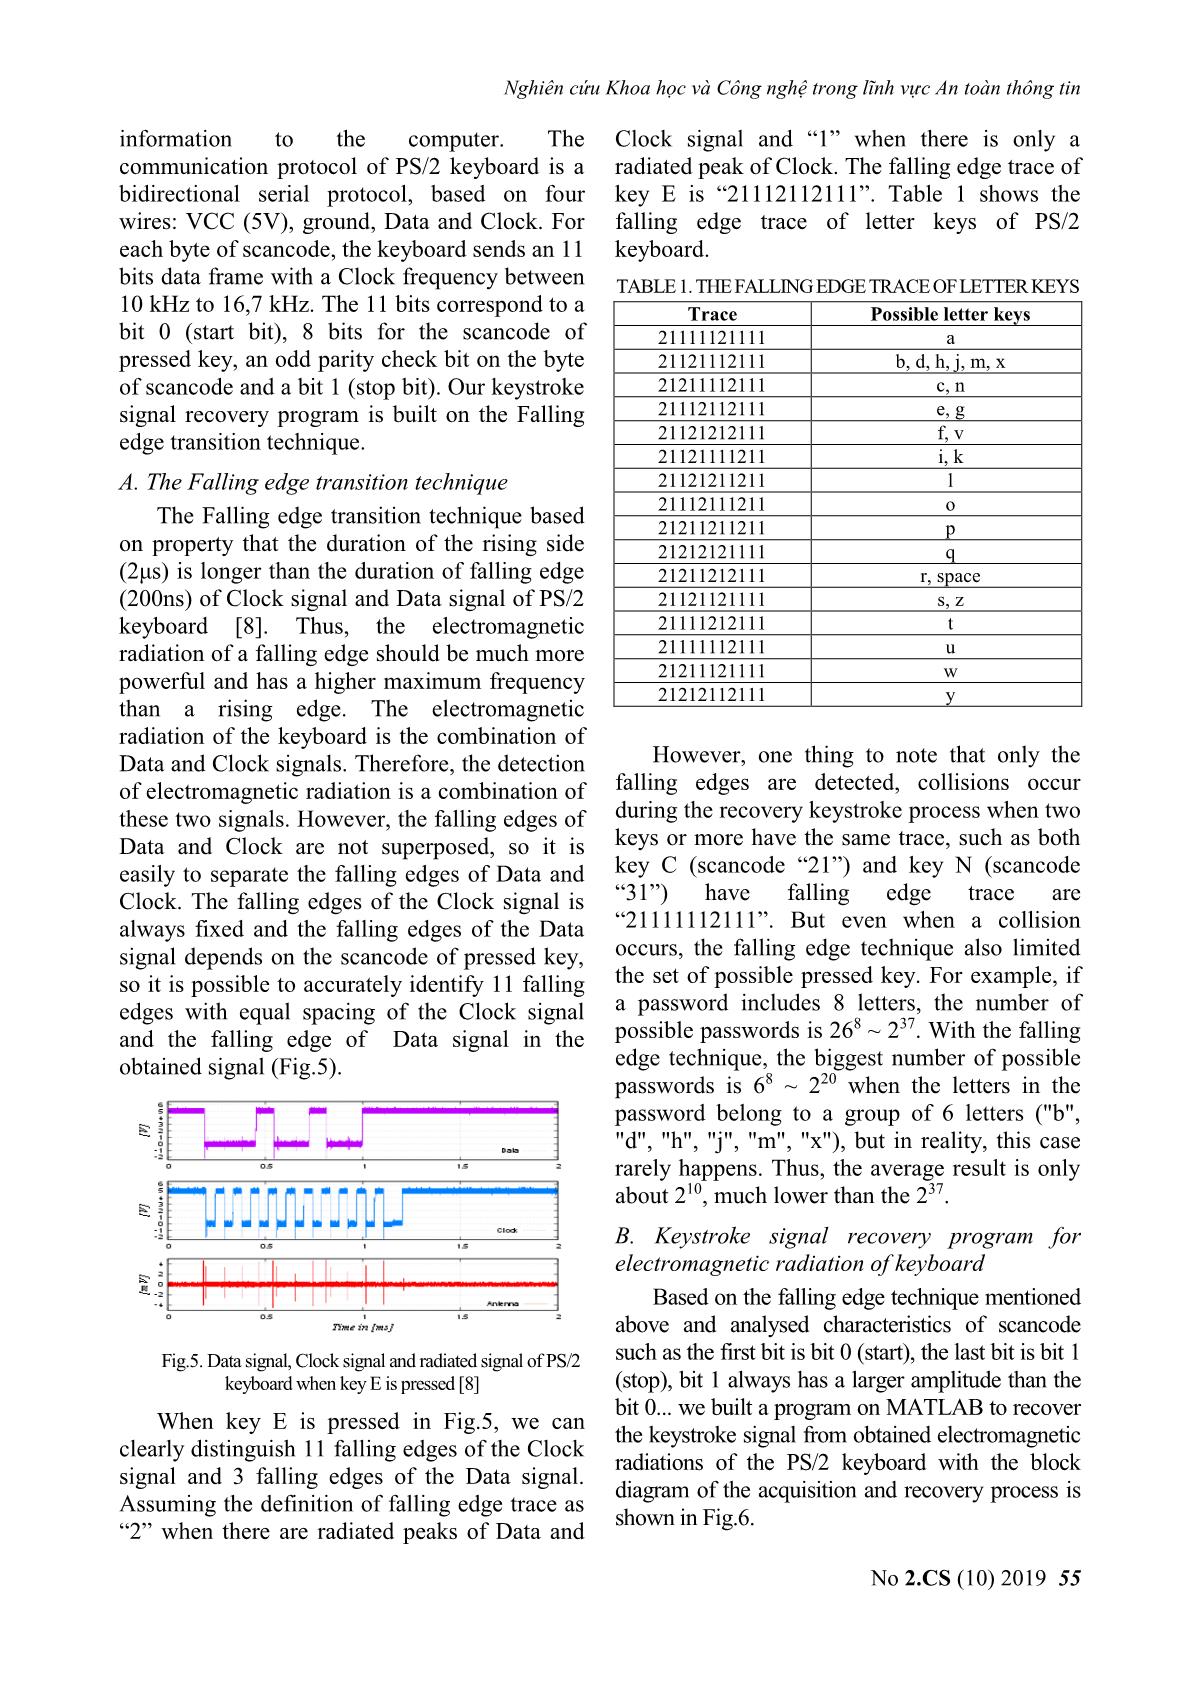 Information leakage through electromagnetic radiation of ps/2 keyboard trang 5